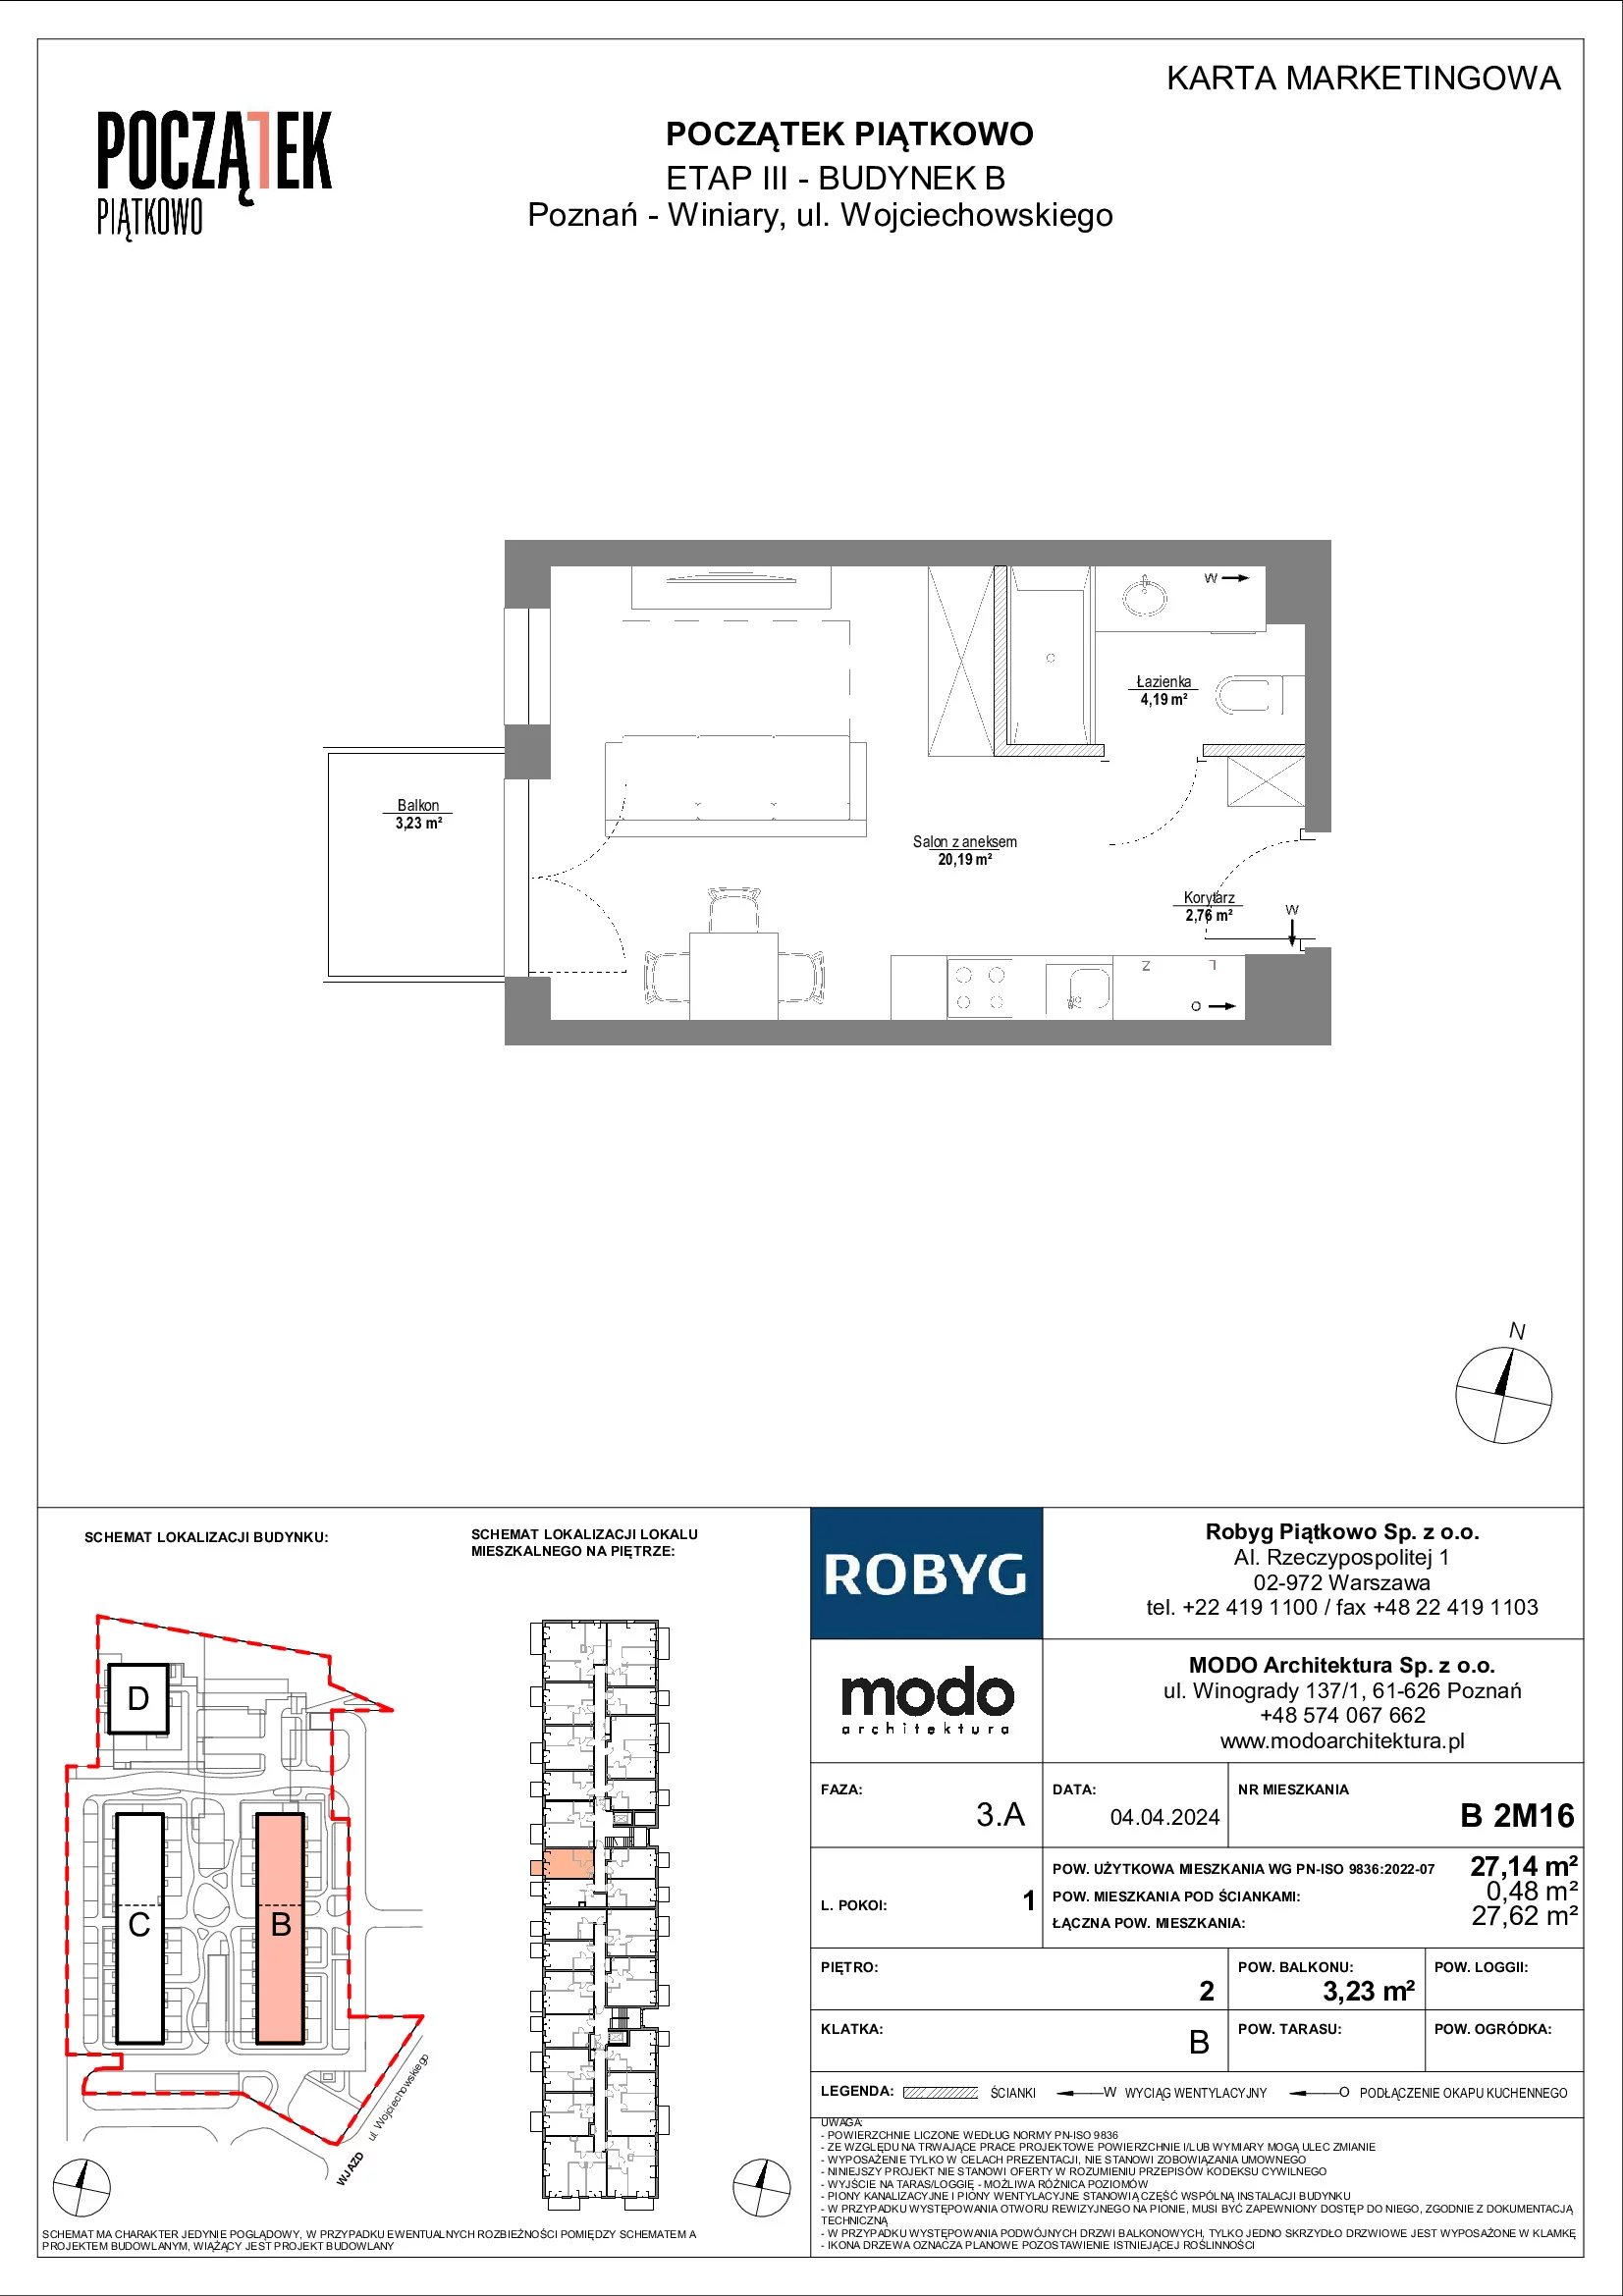 Mieszkanie 27,14 m², piętro 2, oferta nr B.2M16, Początek Piątkowo, Poznań, Piątkowo, ul. Wojciechowskiego